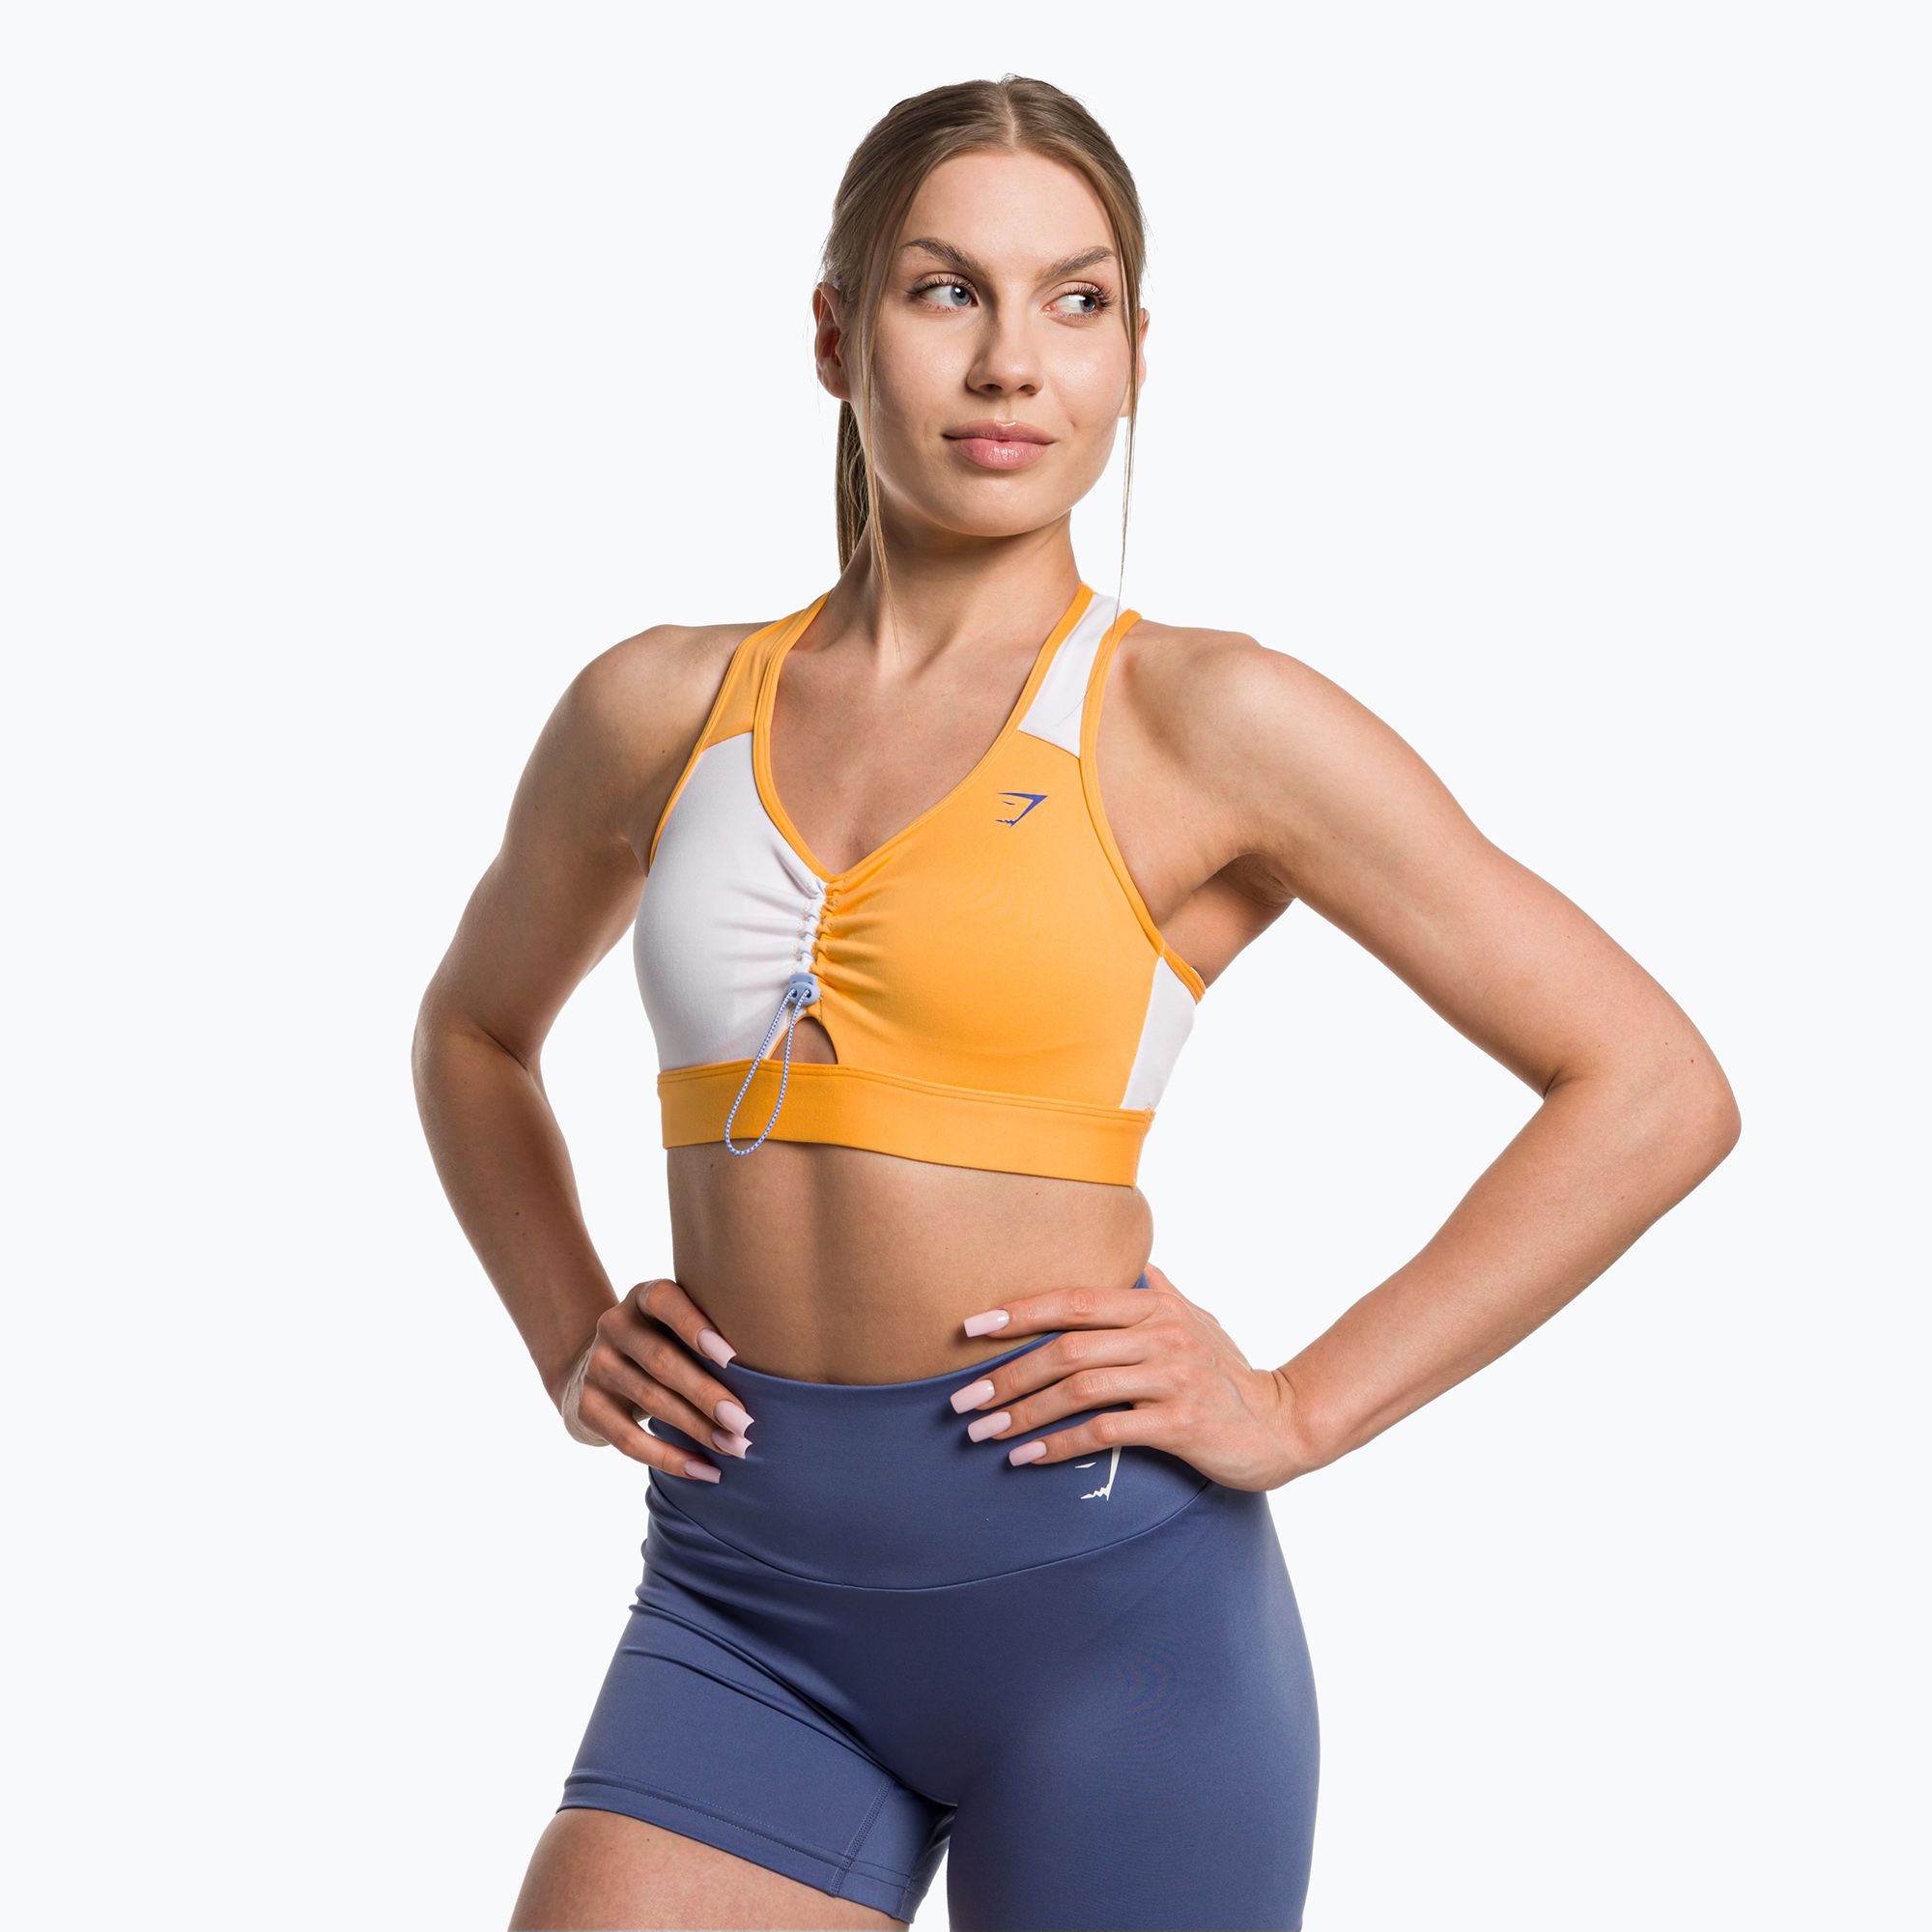 Women's training leggings Gymshark Adapt Camo Savanna Seamless yellow/white  